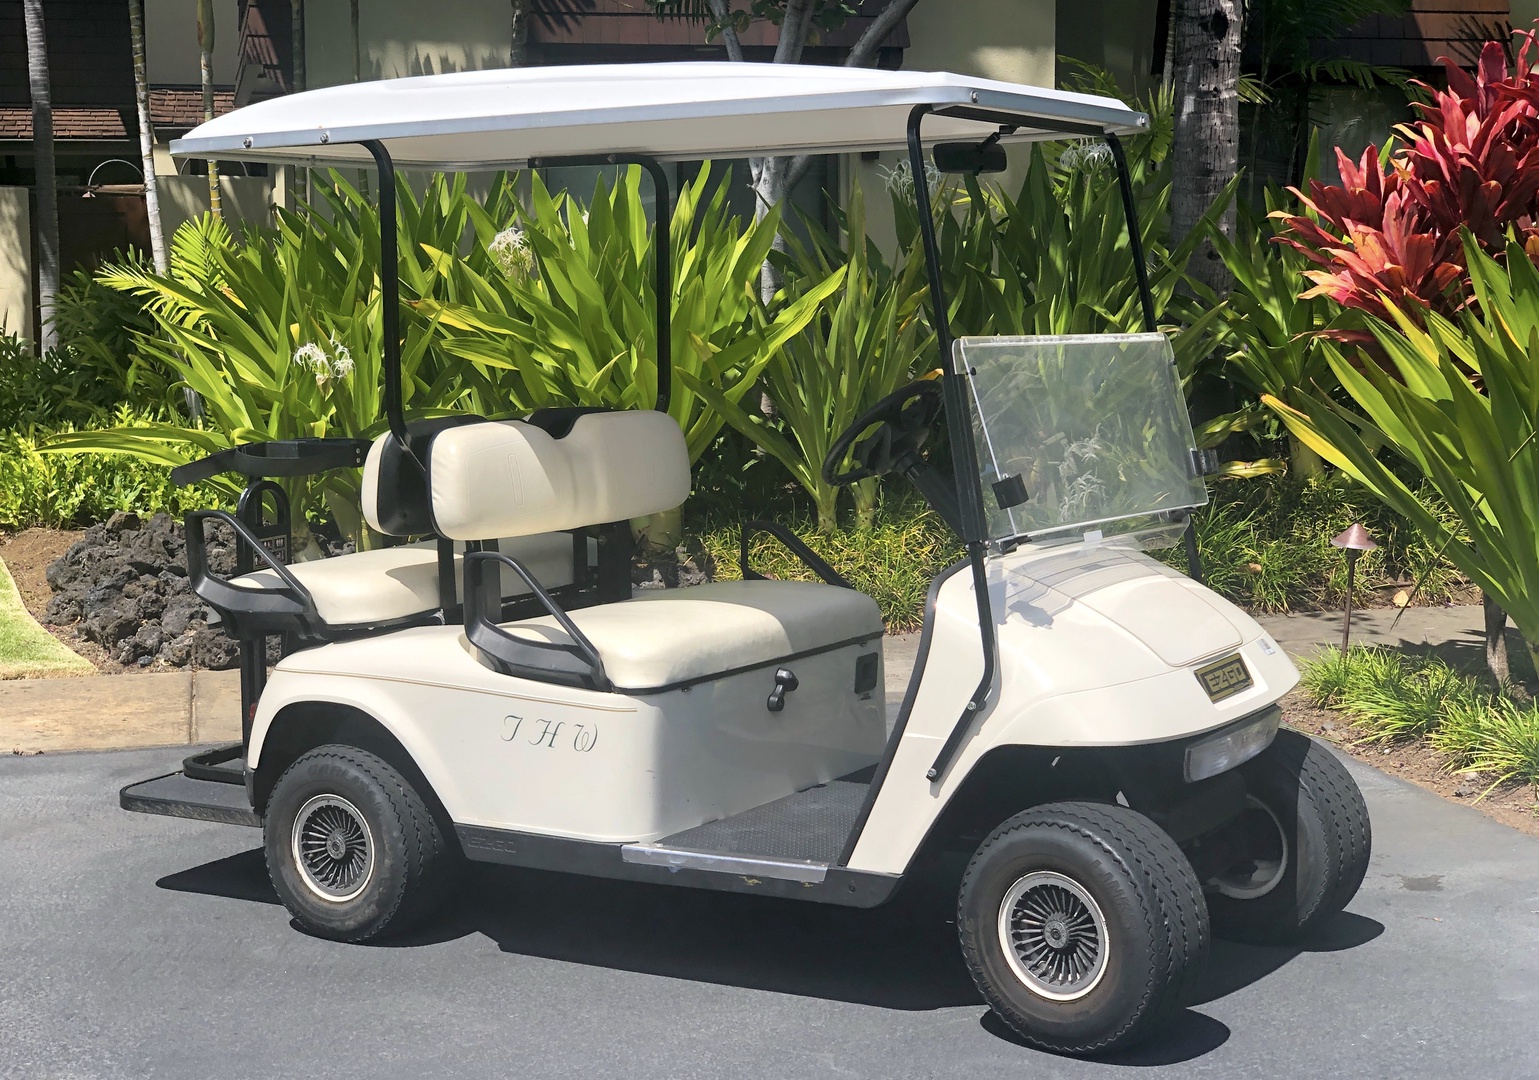 Kailua Kona Vacation Rentals, 2BD Hainoa Villa (2907B) at Four Seasons Resort at Hualalai - This rental comes with one golf cart!